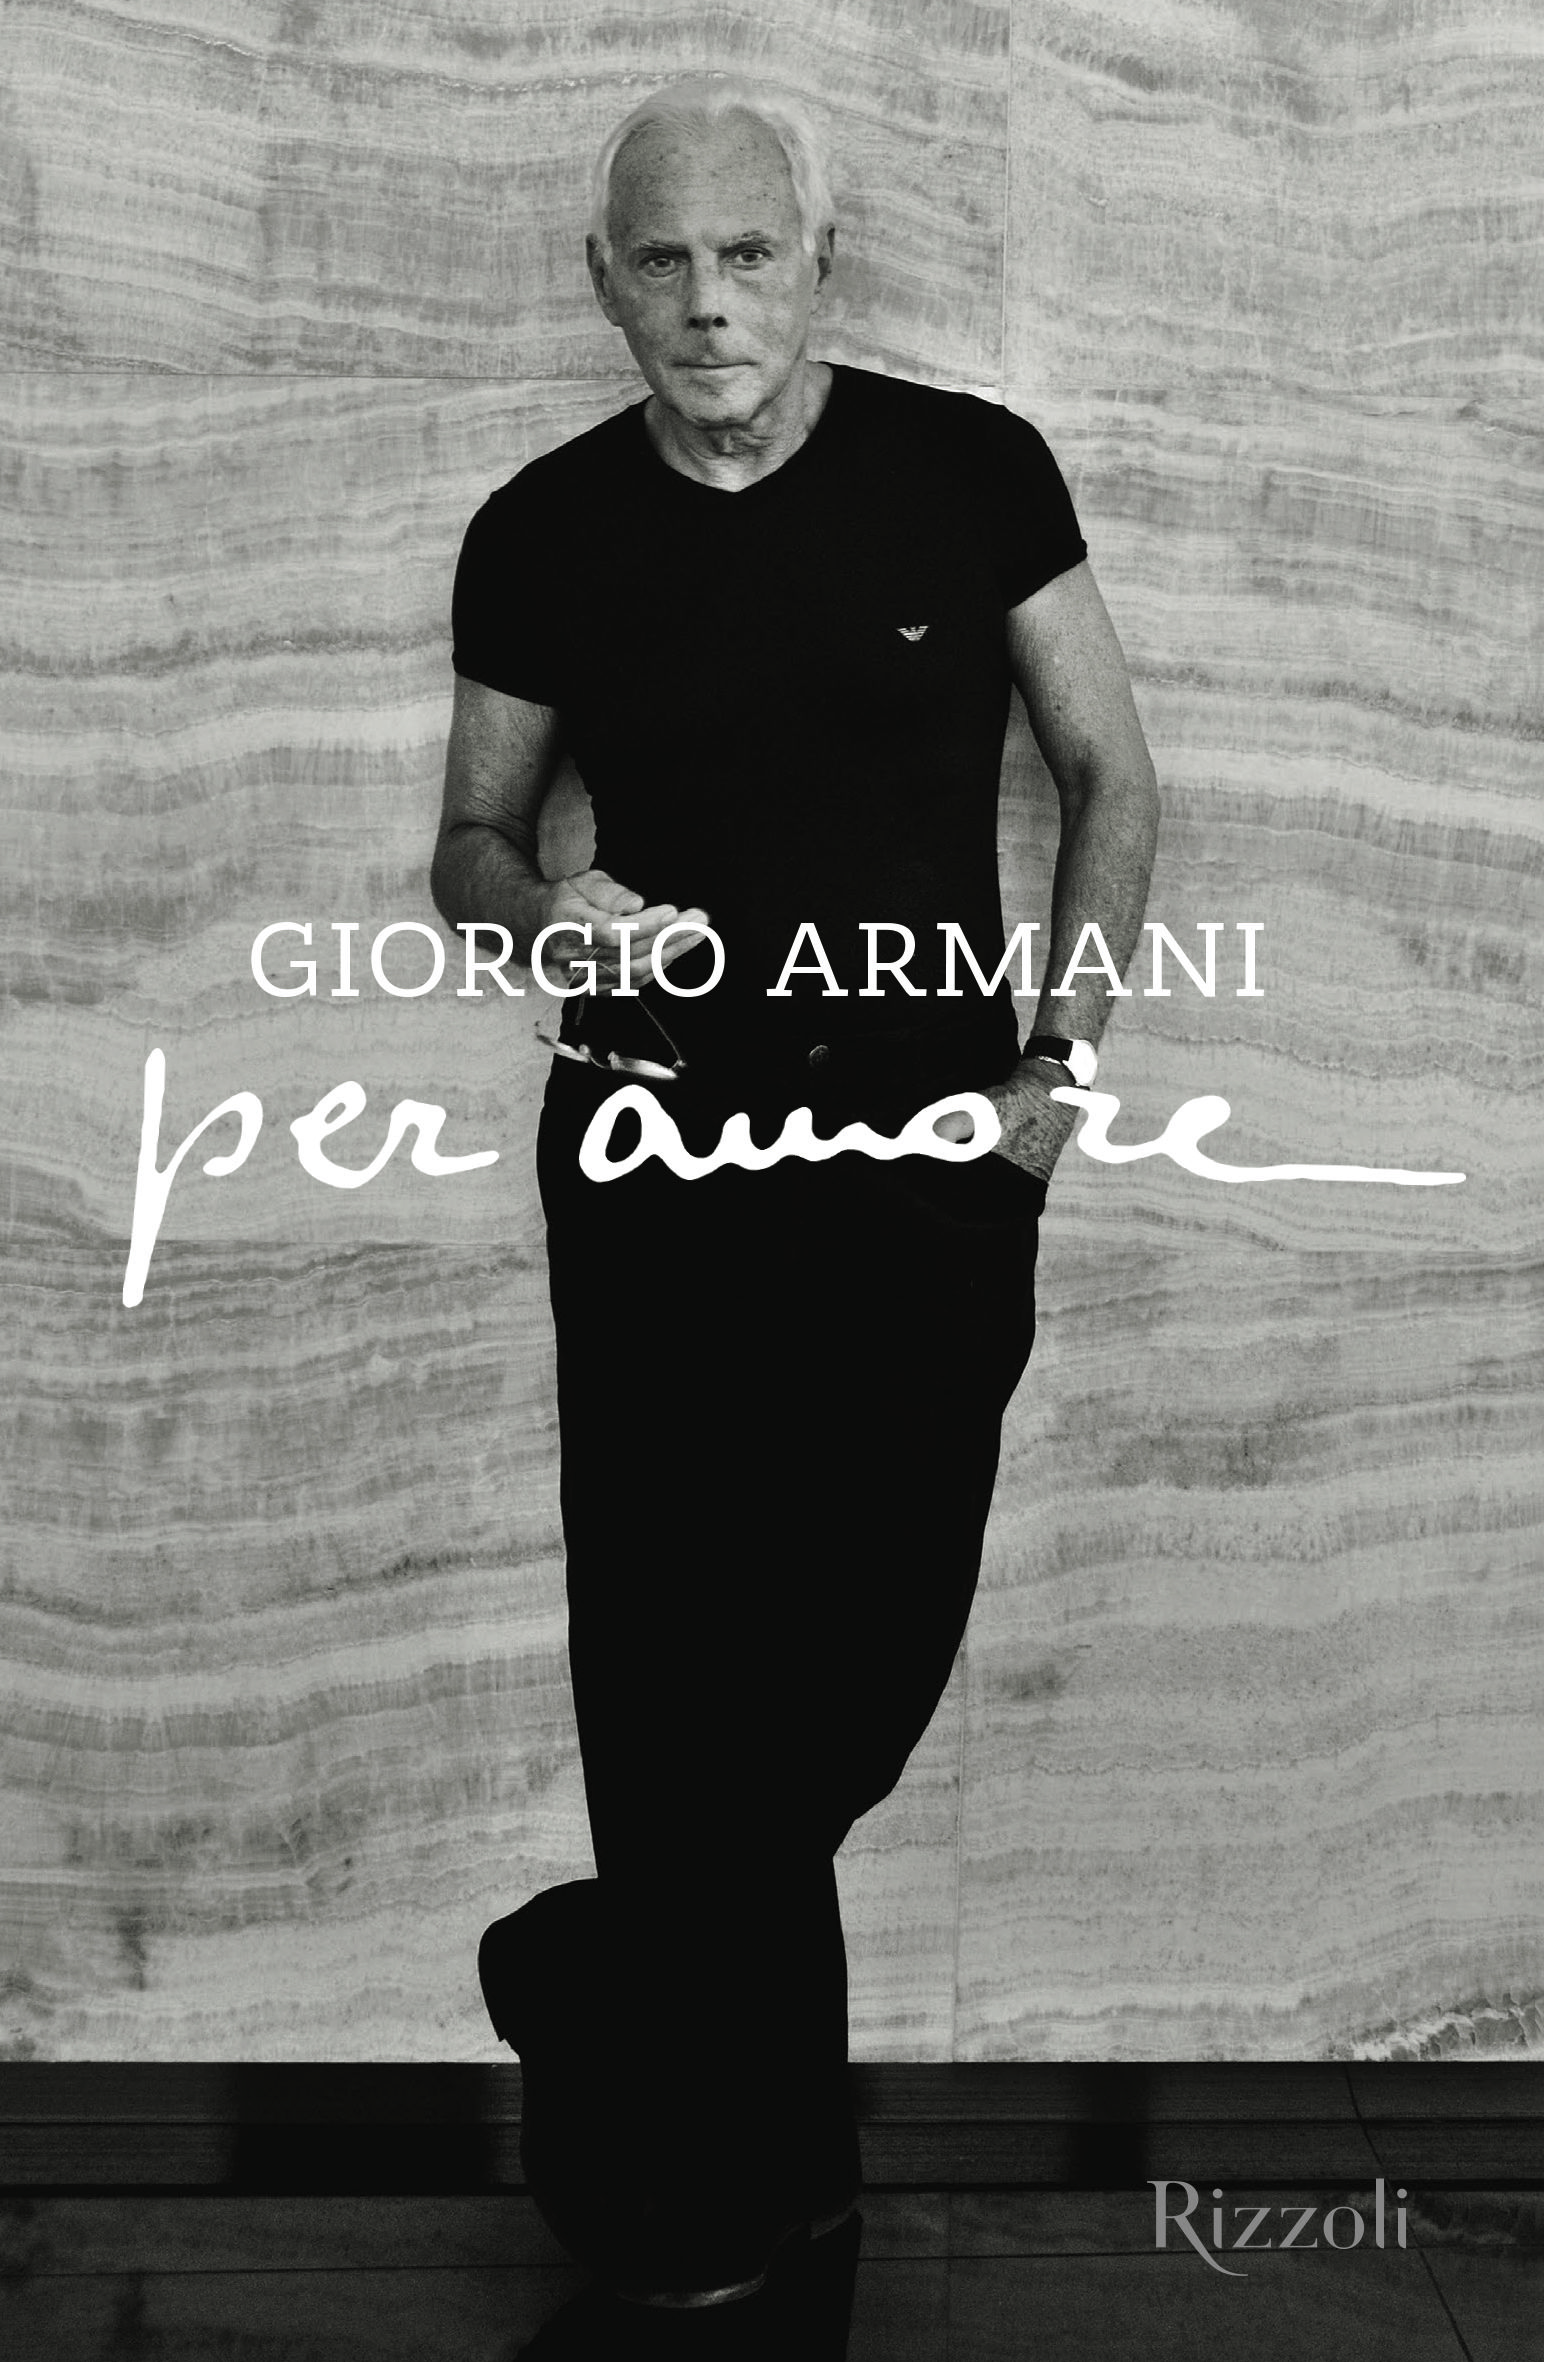 Giorgio Armani Debuts New Book, Per Amore